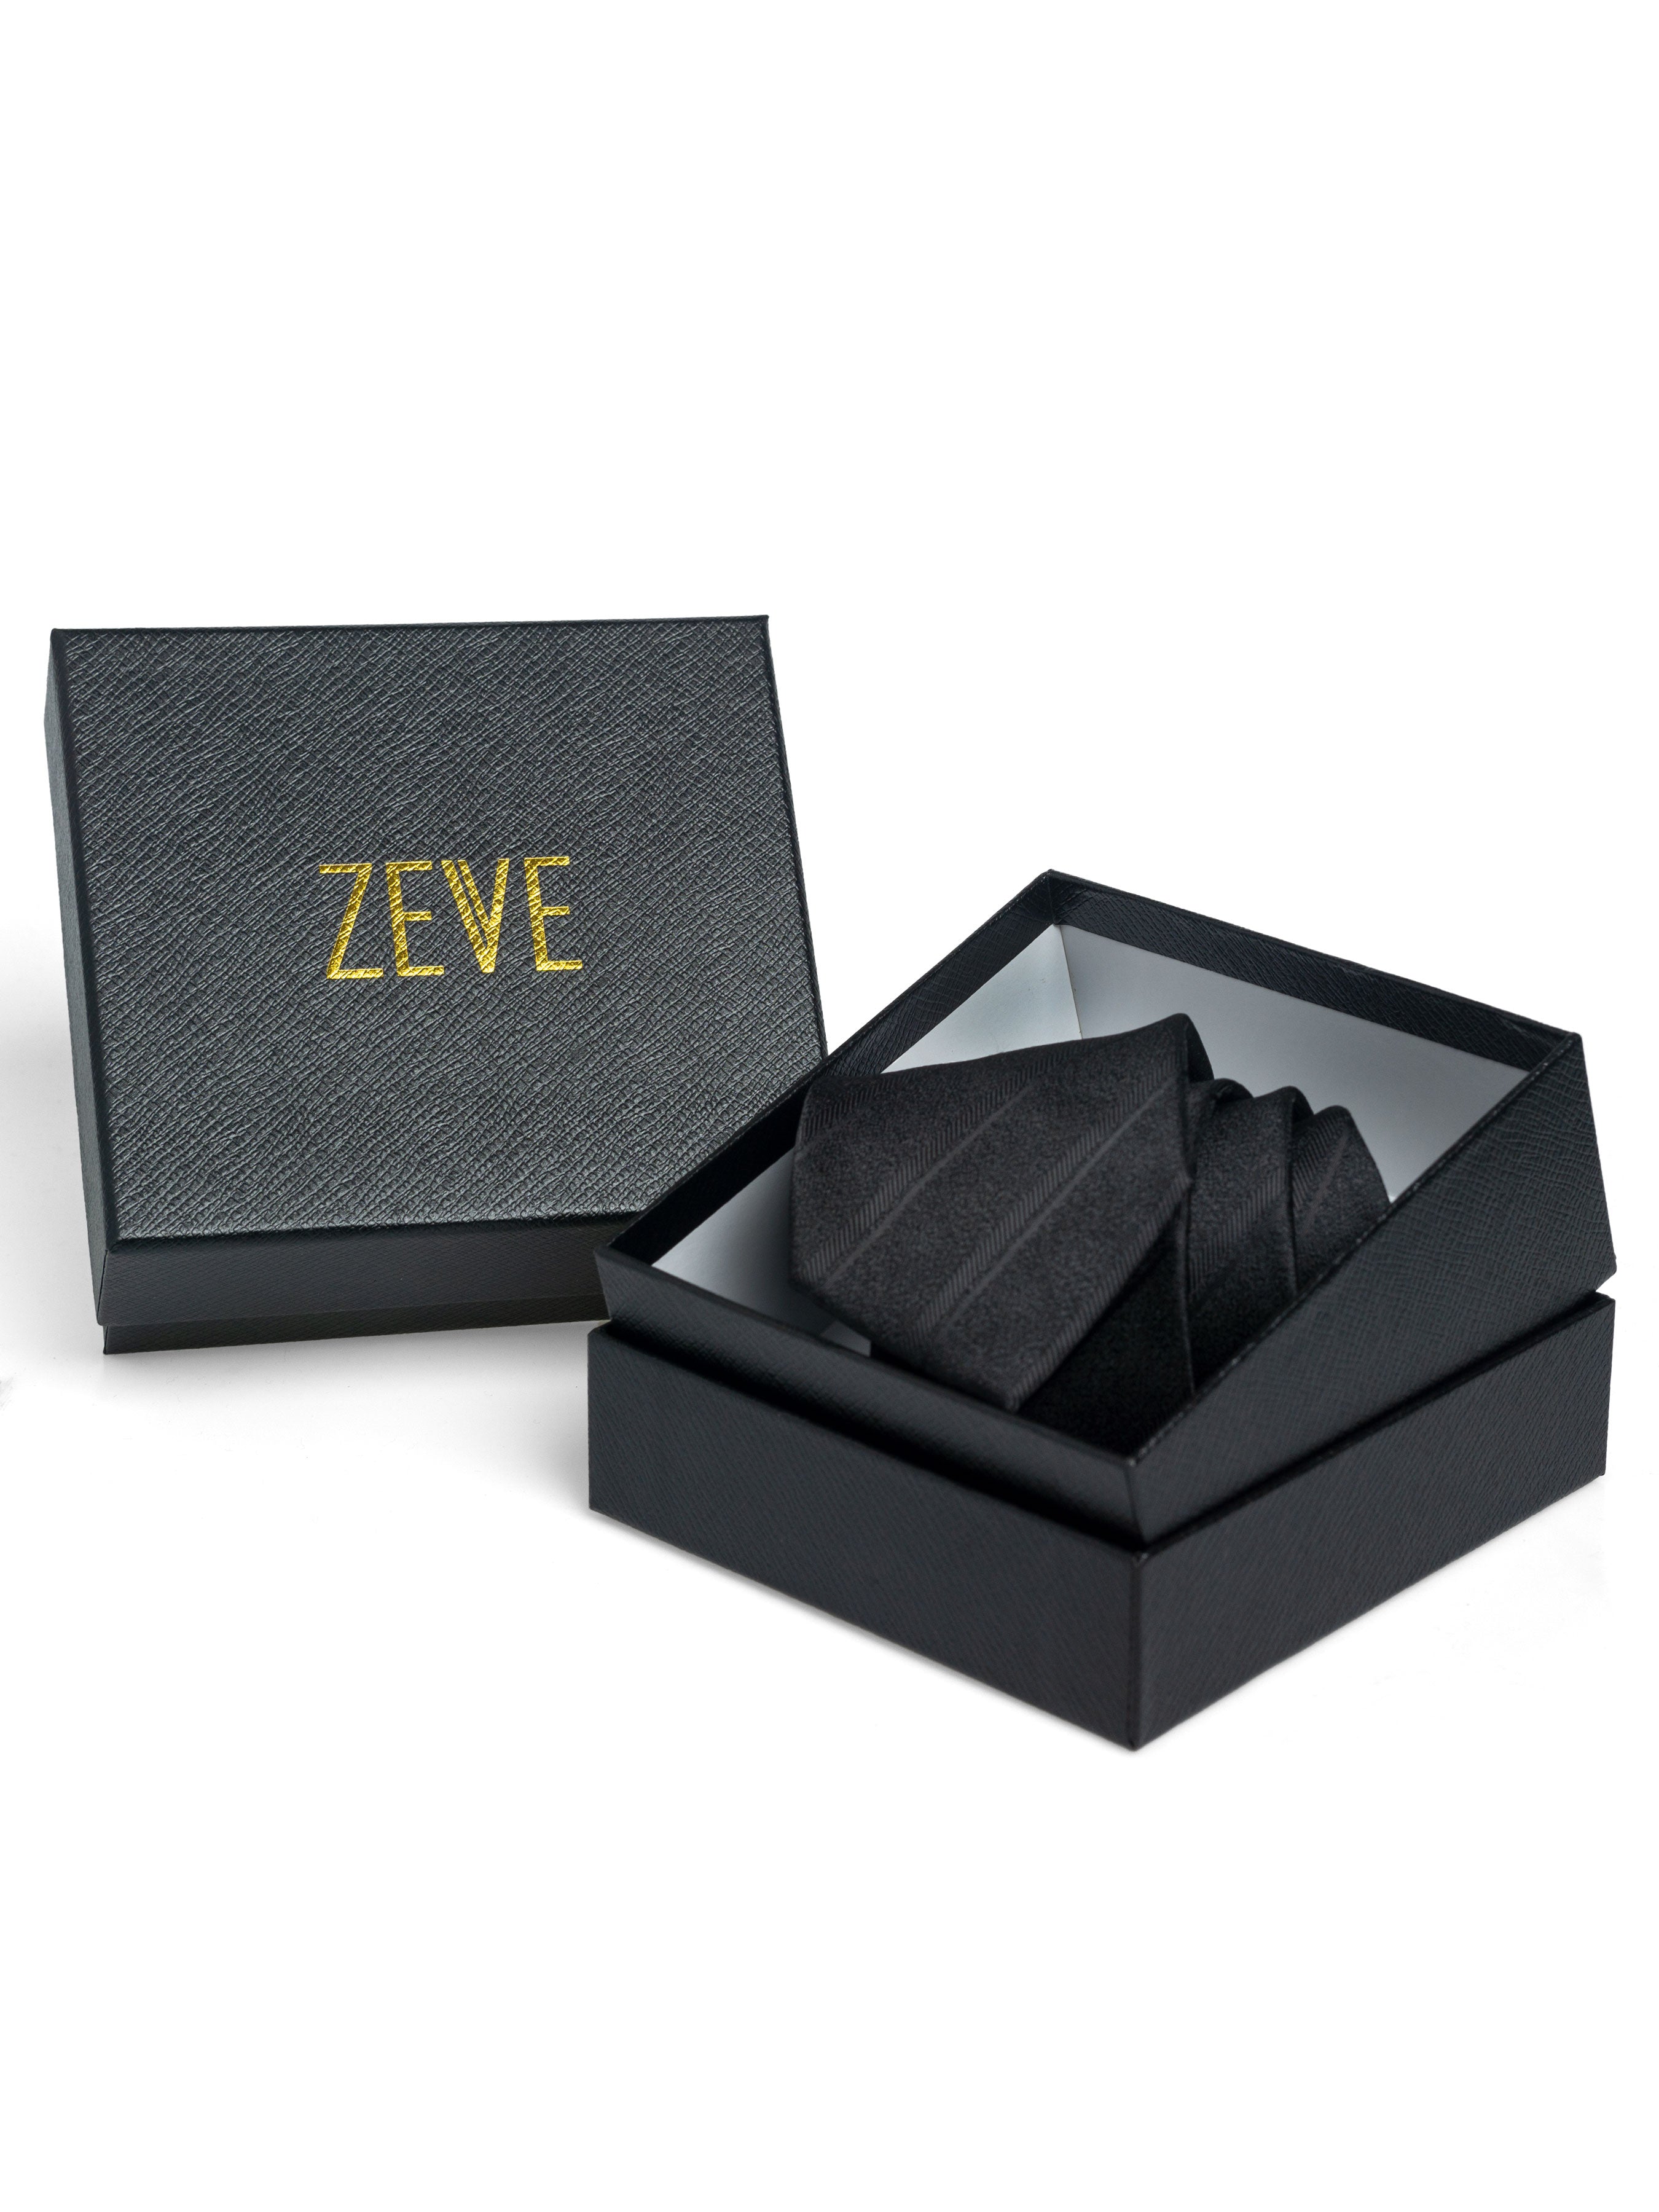 Geometric Square Tie - Navy Blue - Zeve Shoes